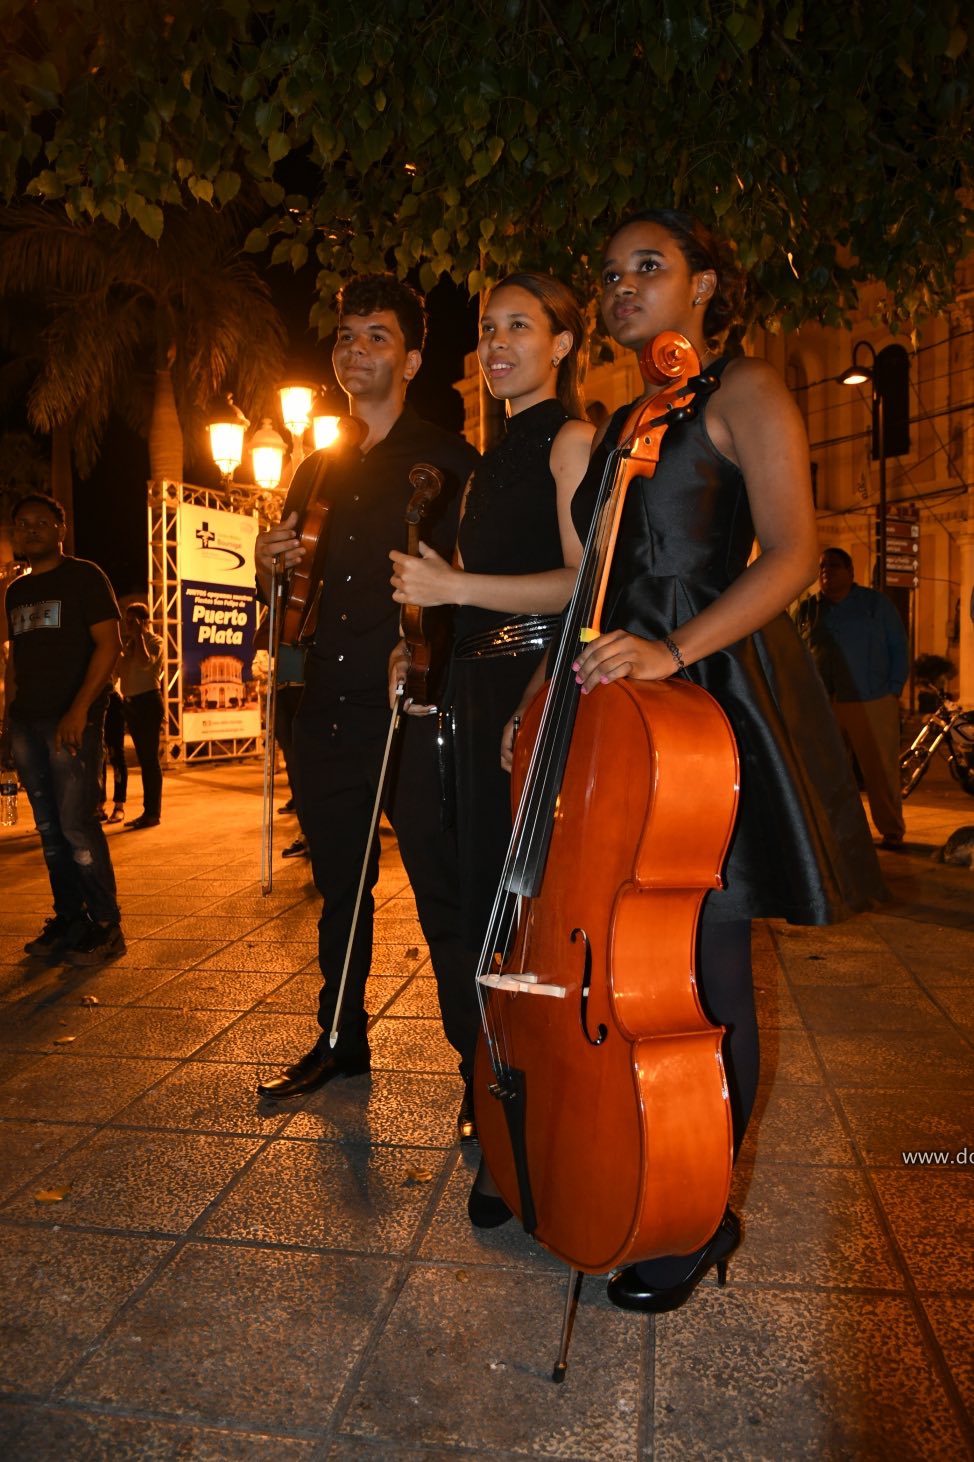 local festivities in Puerto Plata